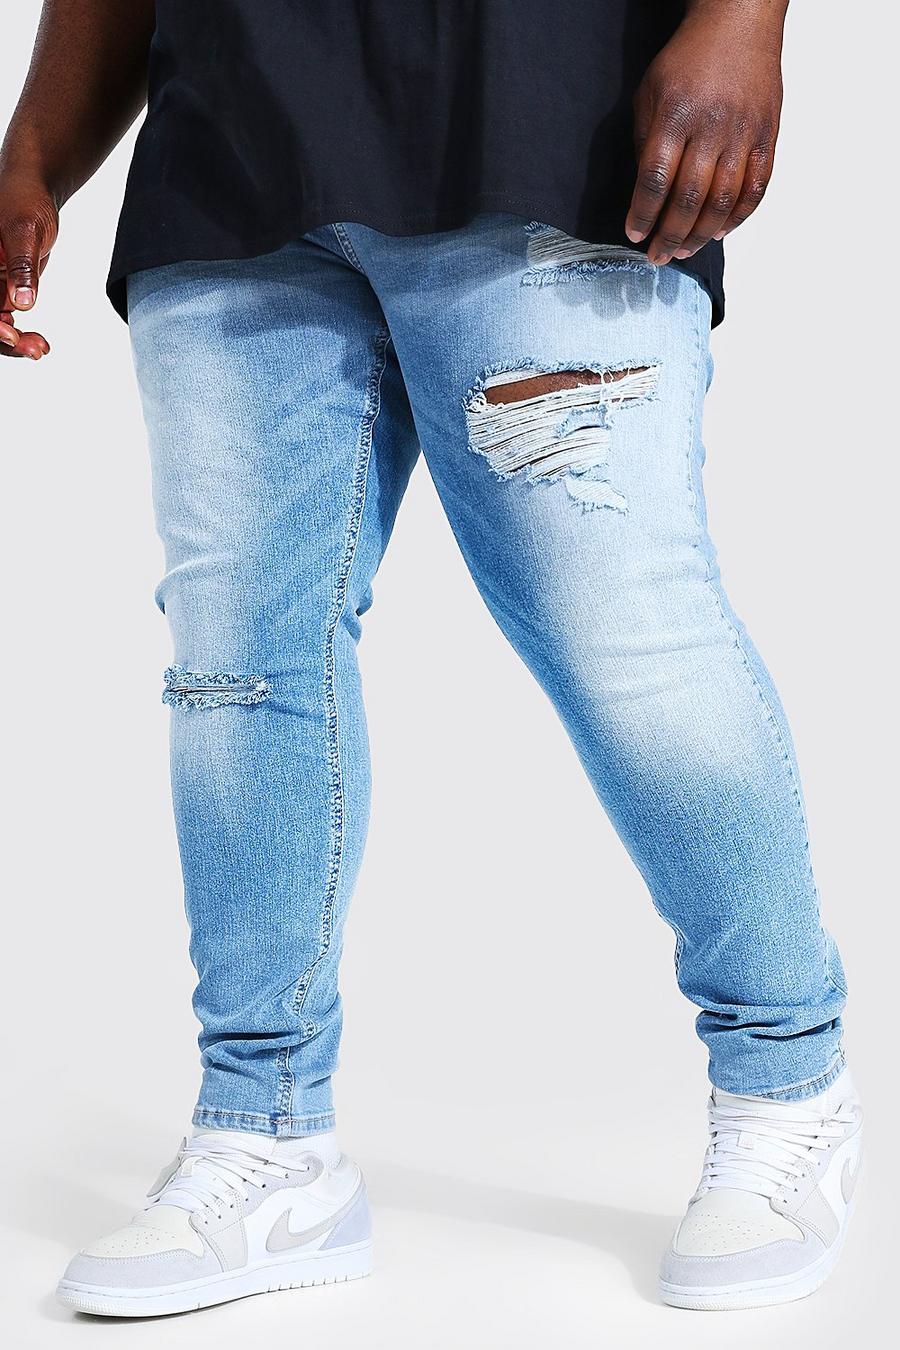 כחול בהיר ג'ינס אופנוענים סופר סקיני עם קרעים בברך, מידות גדולות image number 1